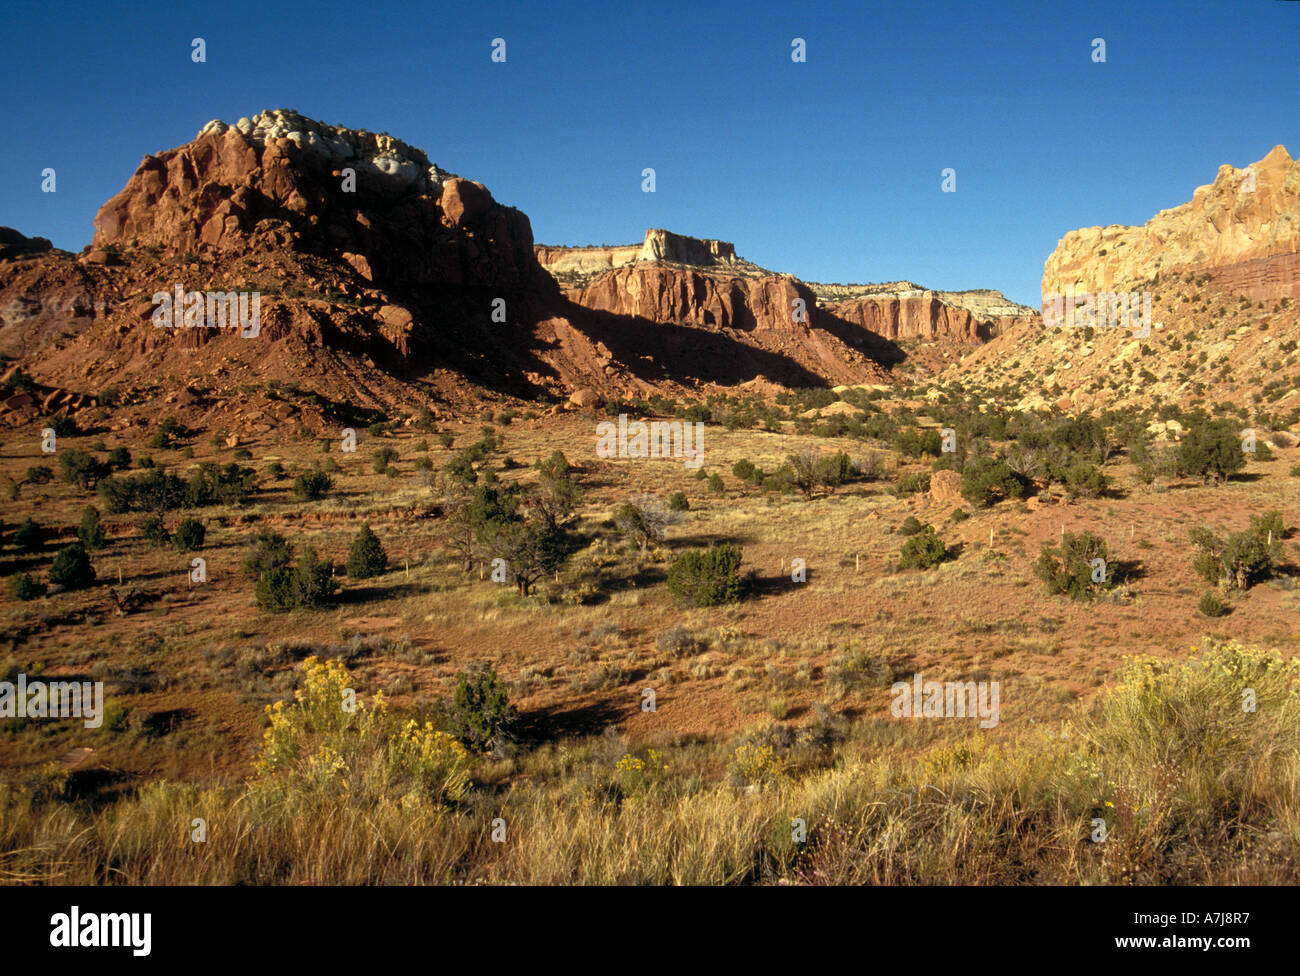 Arid landscape near Sedona Arizona Stock Photo